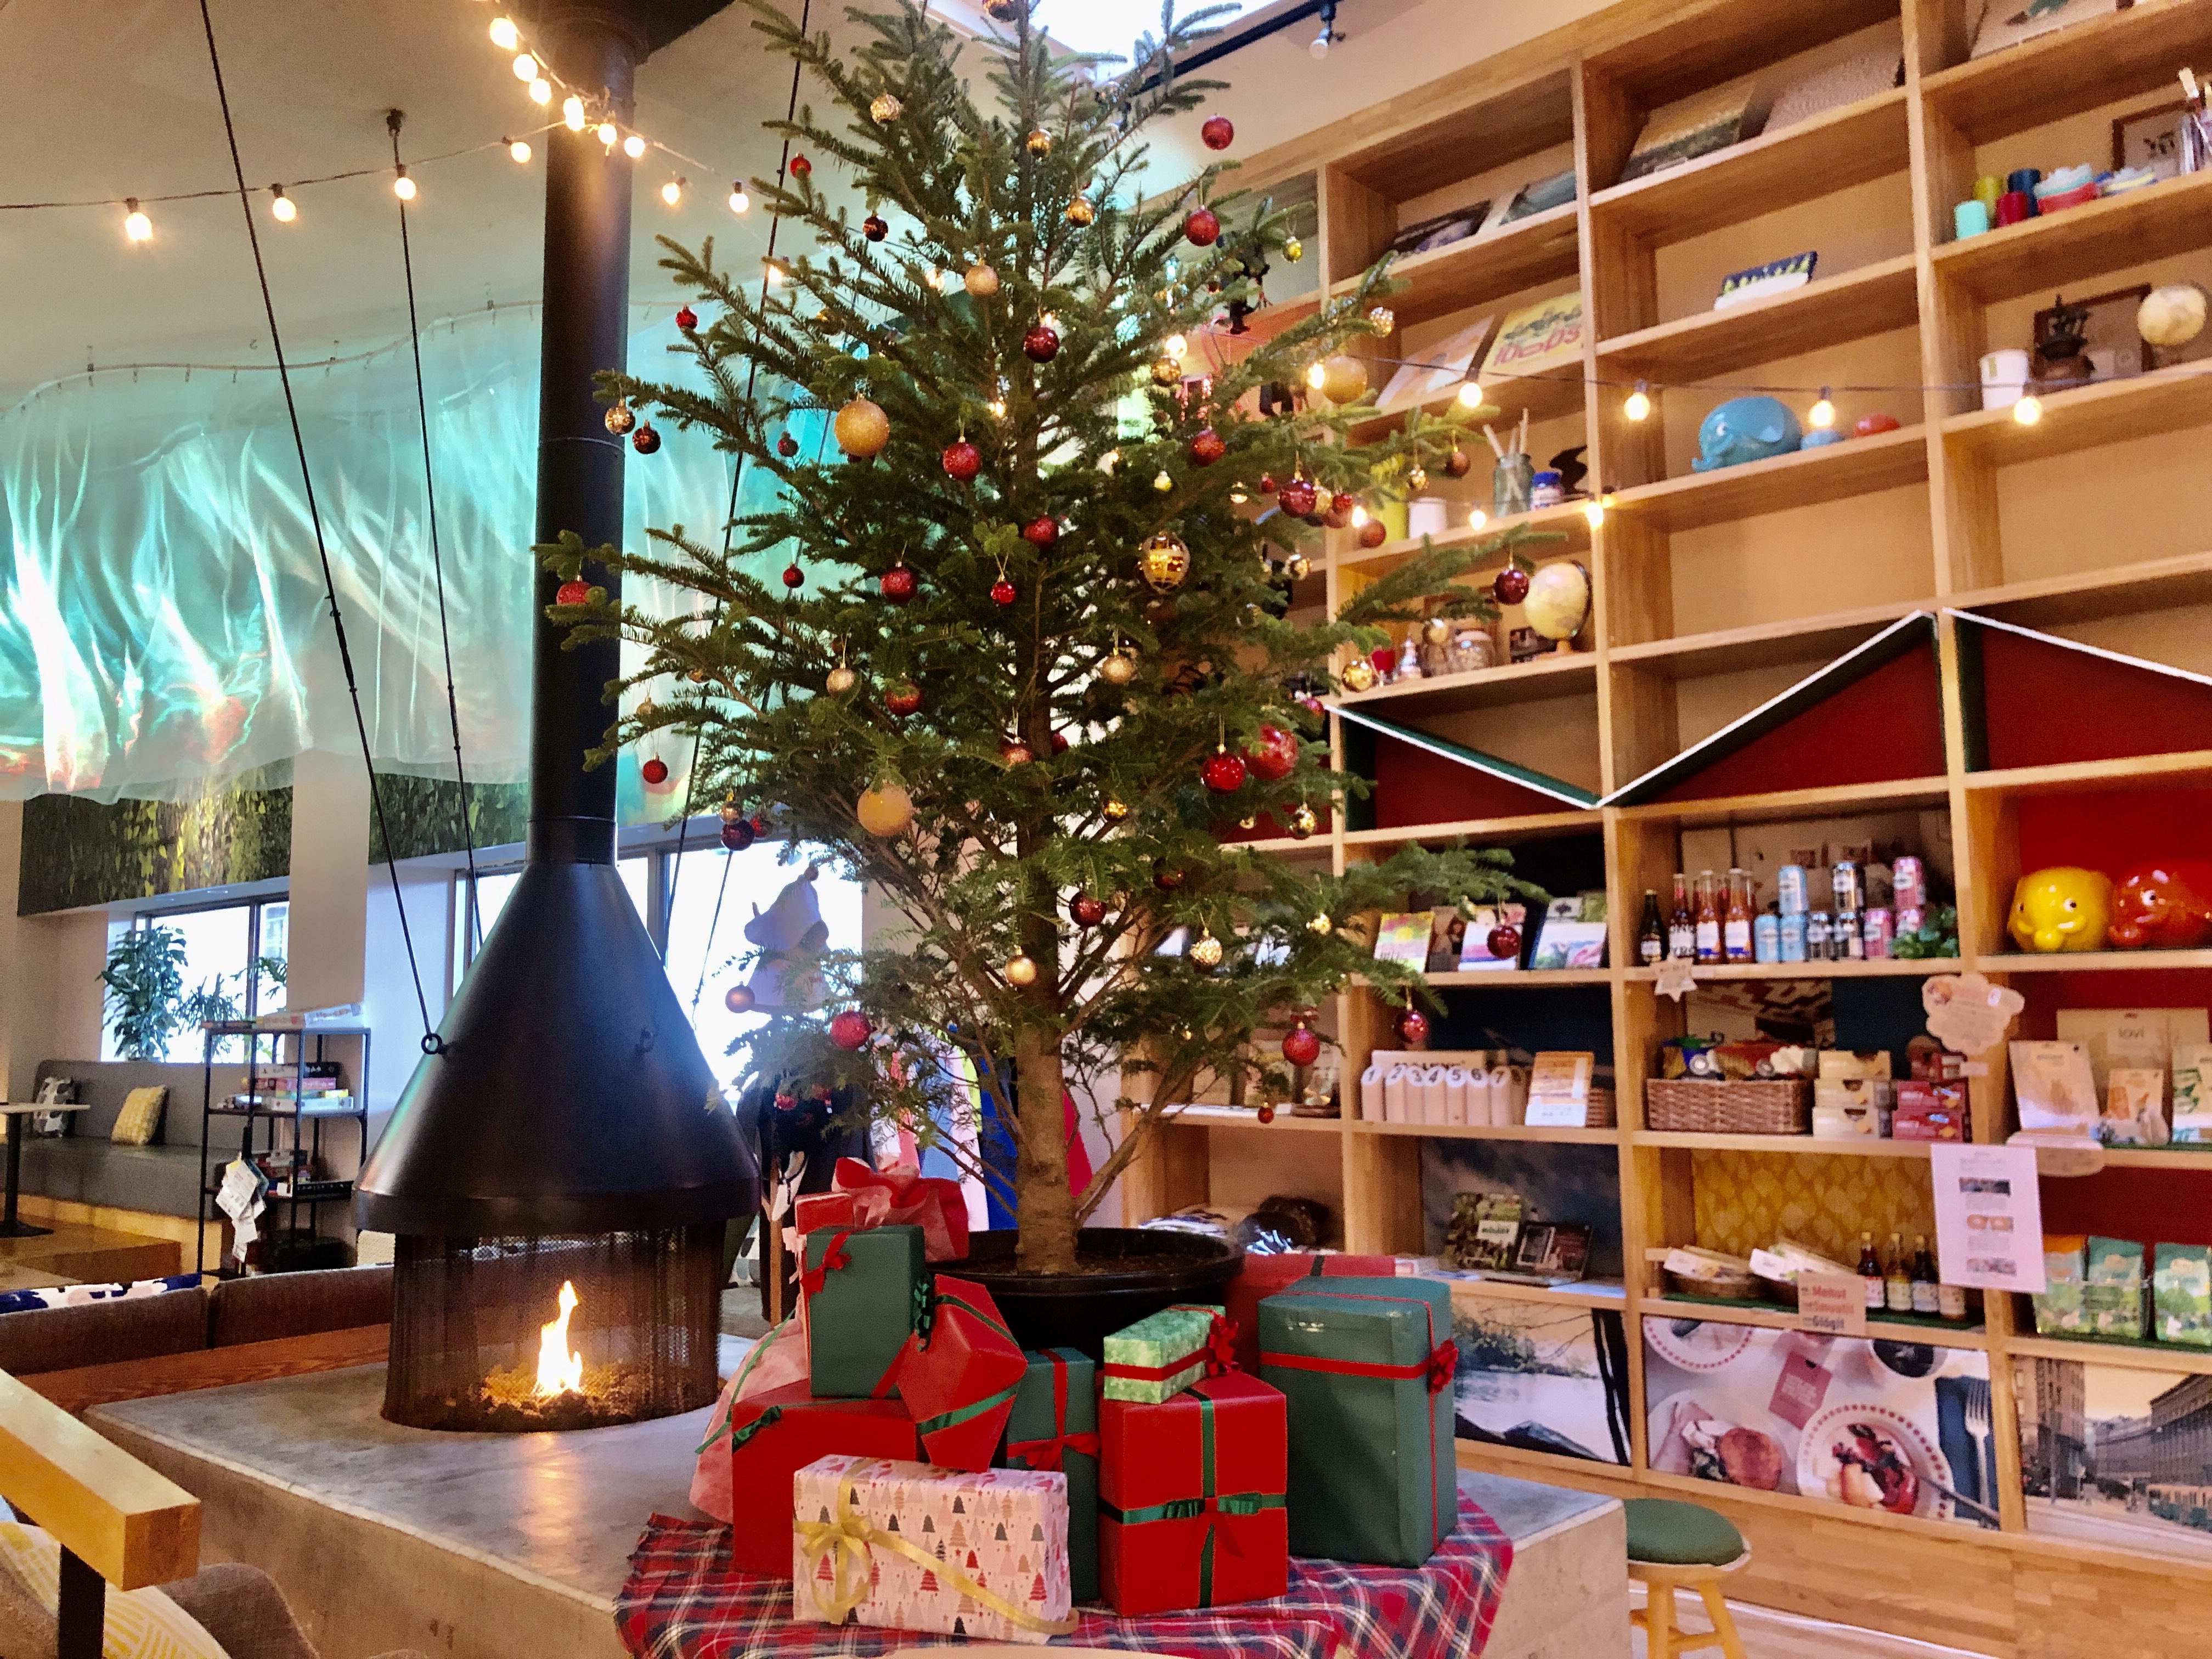 おふろcafe Utatane おふろ屋さんでフィンランドのクリスマスパーティー ピックヨウル 開催 北欧雑貨市 サウナ 伝統料理を提供 株式会社温泉道場のプレスリリース